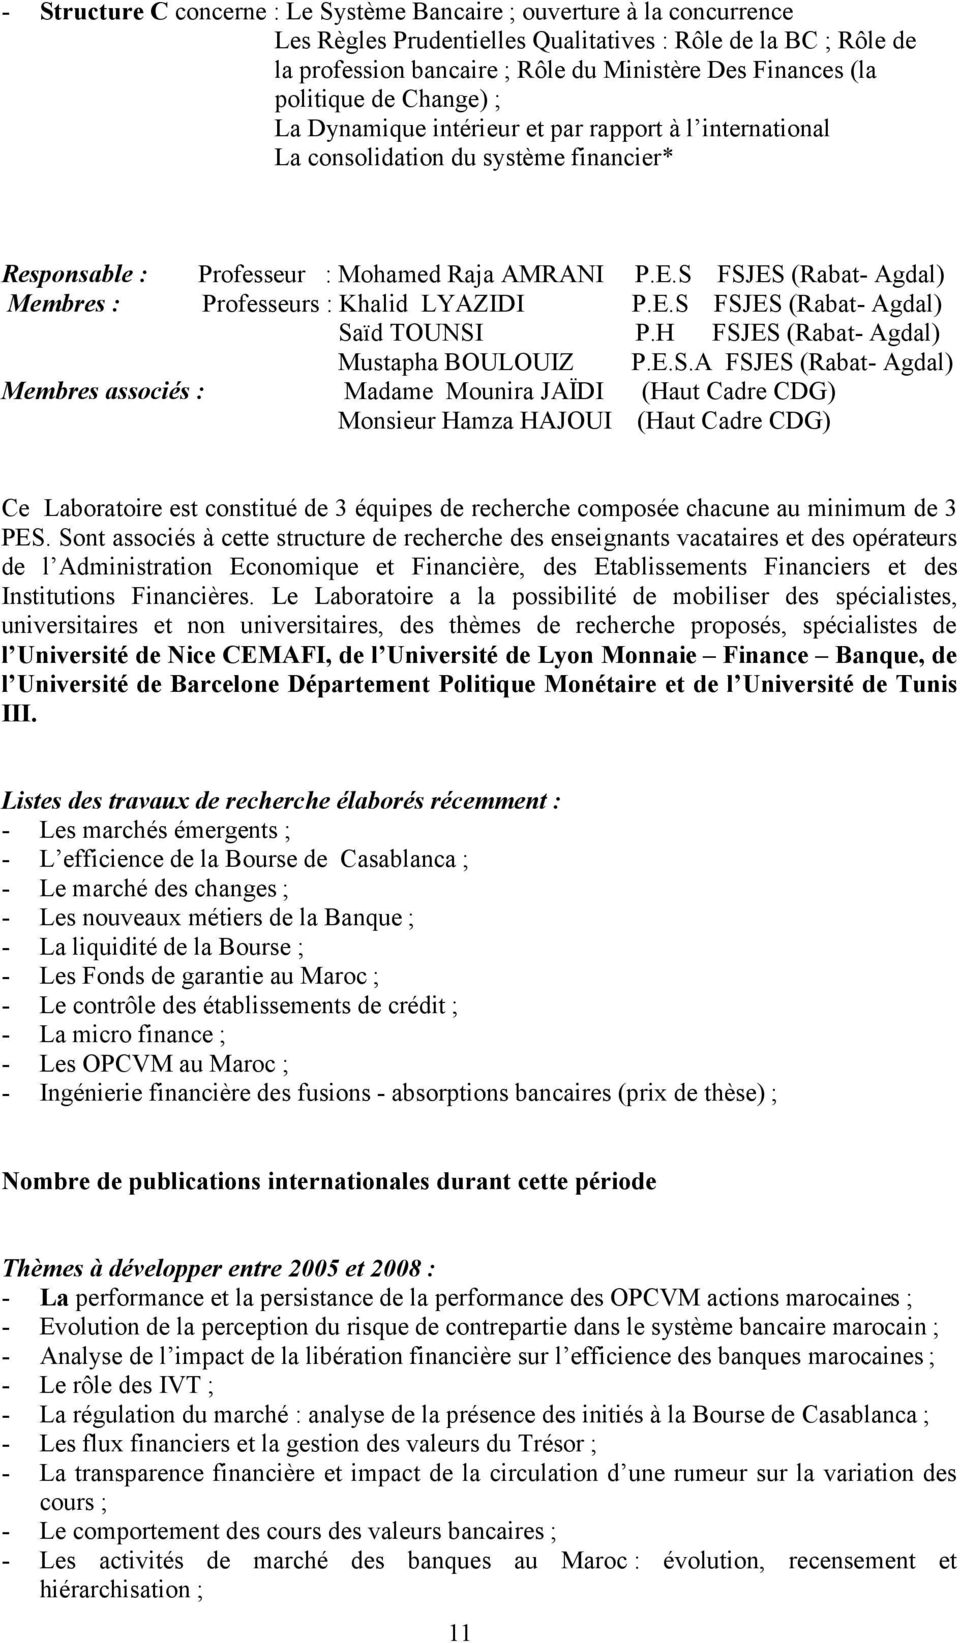 S FSJES (Rabat- Agdal) Membres : Professeurs : Khalid LYAZIDI P.E.S FSJES (Rabat- Agdal) Saïd TOUNSI P.H FSJES (Rabat- Agdal) Mustapha BOULOUIZ P.E.S.A FSJES (Rabat- Agdal) Membres associés : Madame